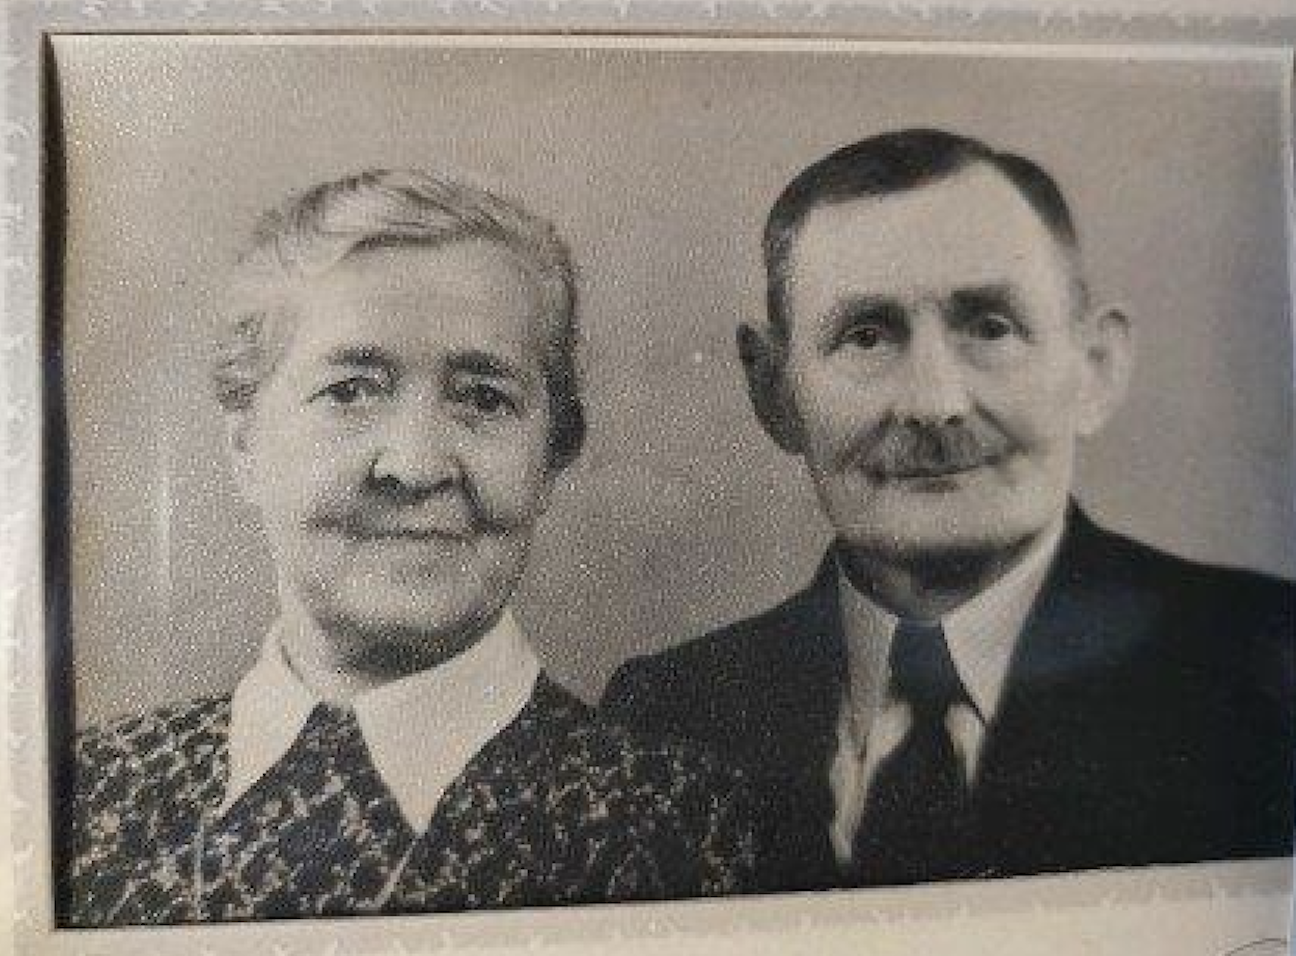 De ouders van mijn grootvader: Hakan en Emma